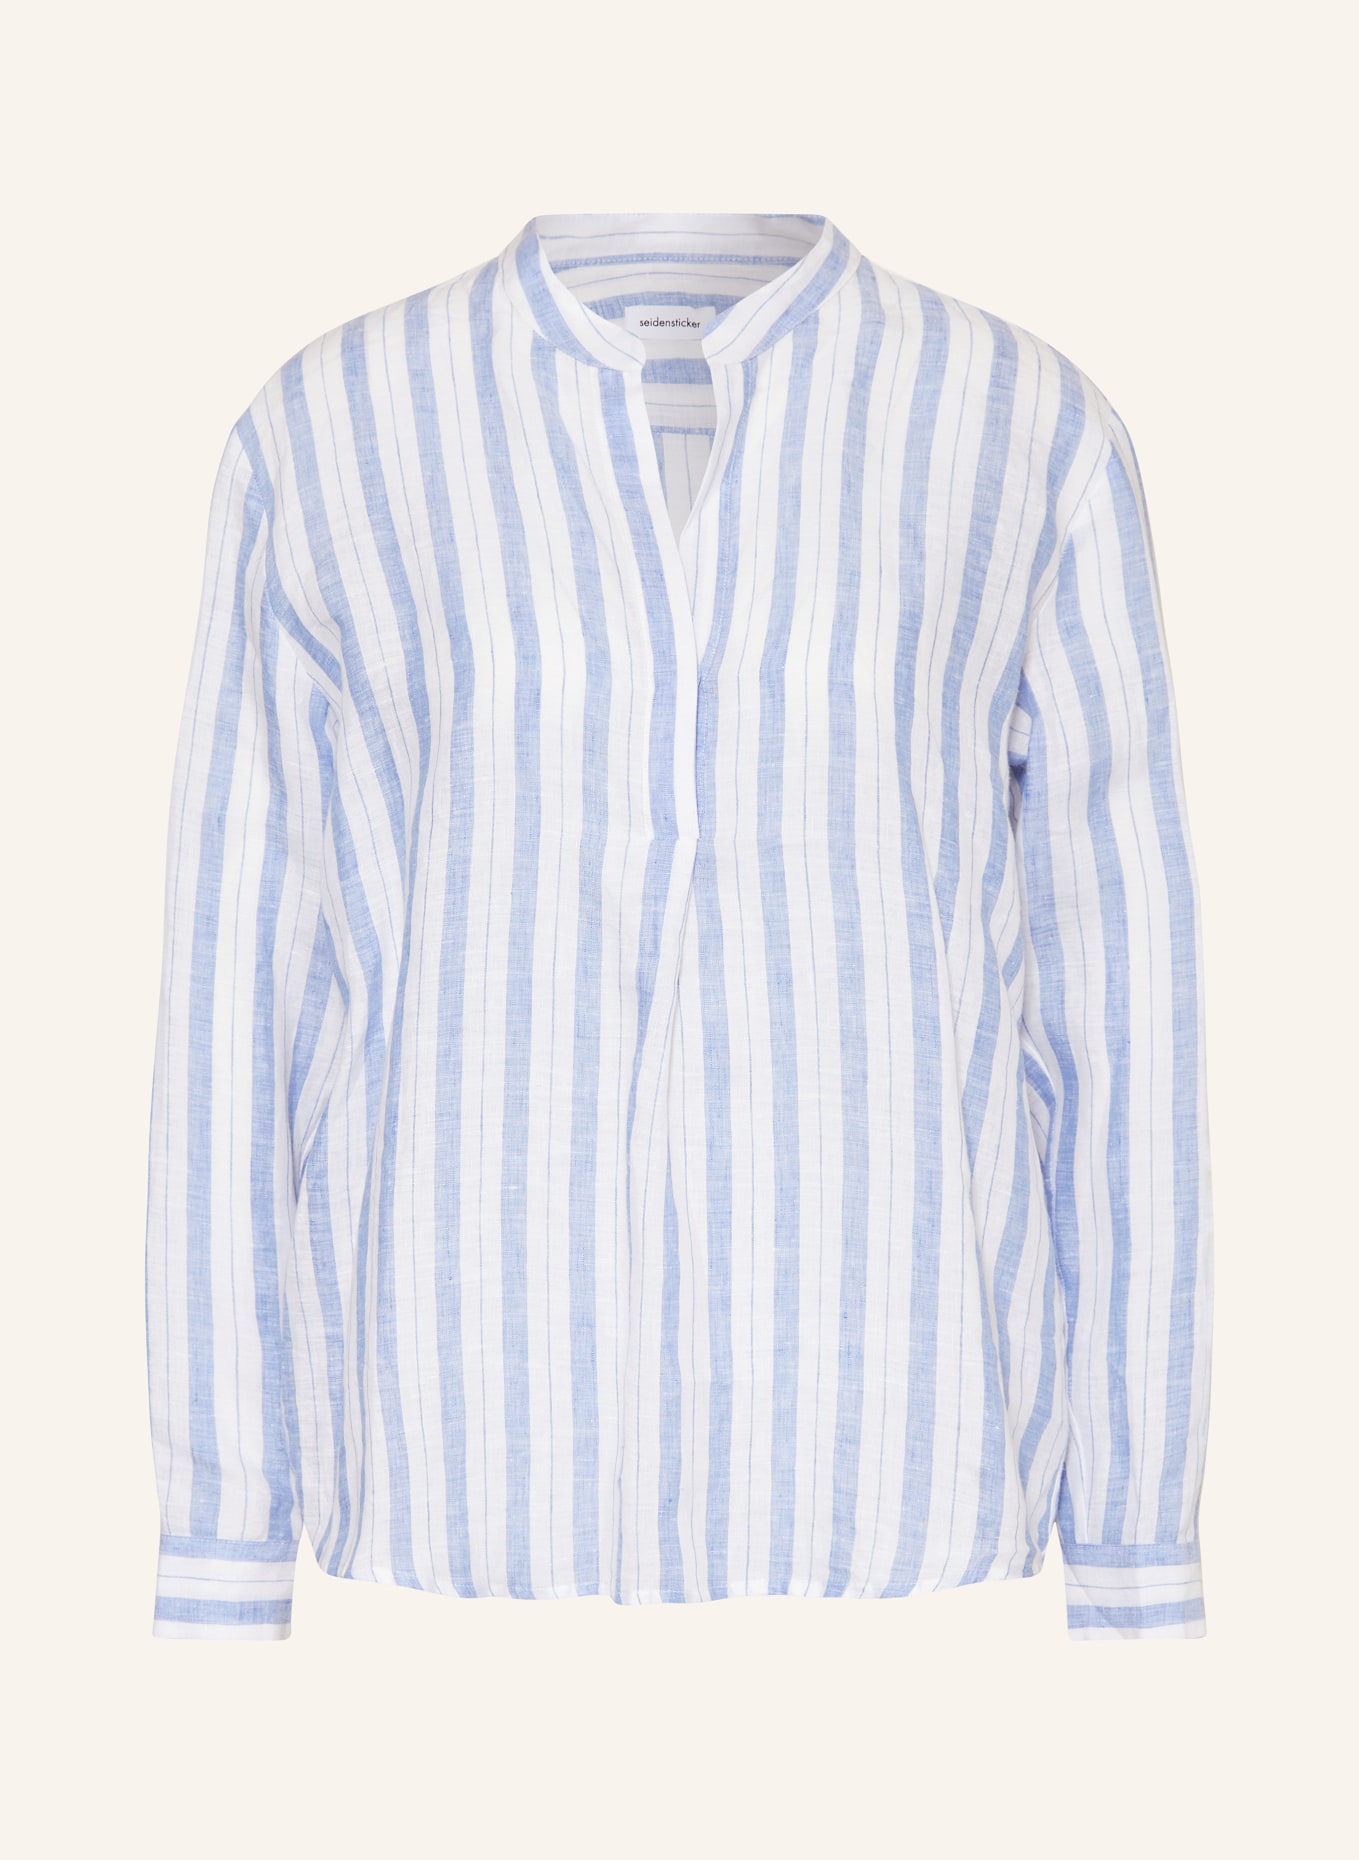 seidensticker Shirt blouse made of linen, Color: LIGHT BLUE/ WHITE (Image 1)